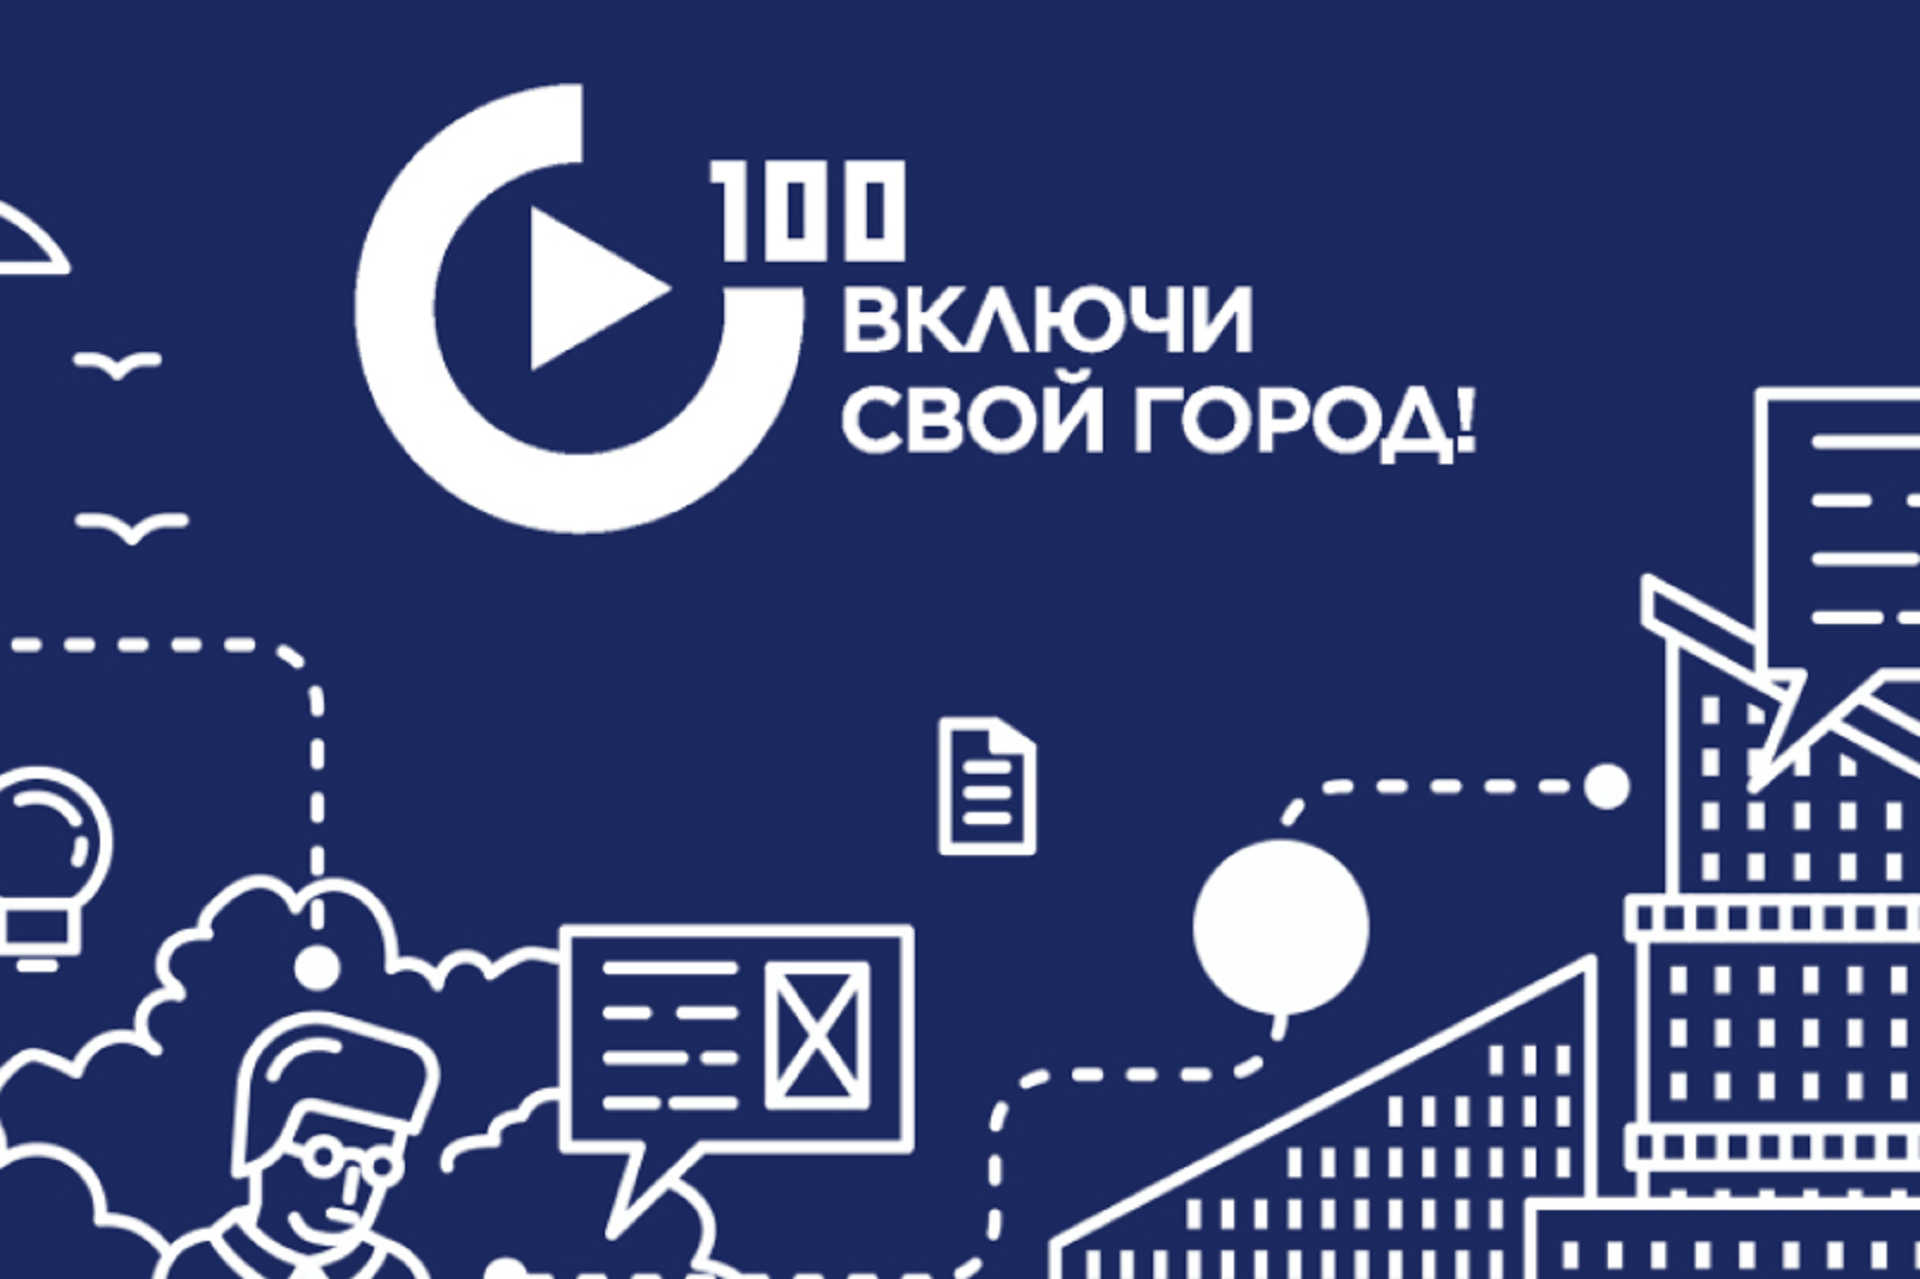 Жителям Кирова предлагают разработать важный документ - стандарт участия граждан в вопросах развития городов